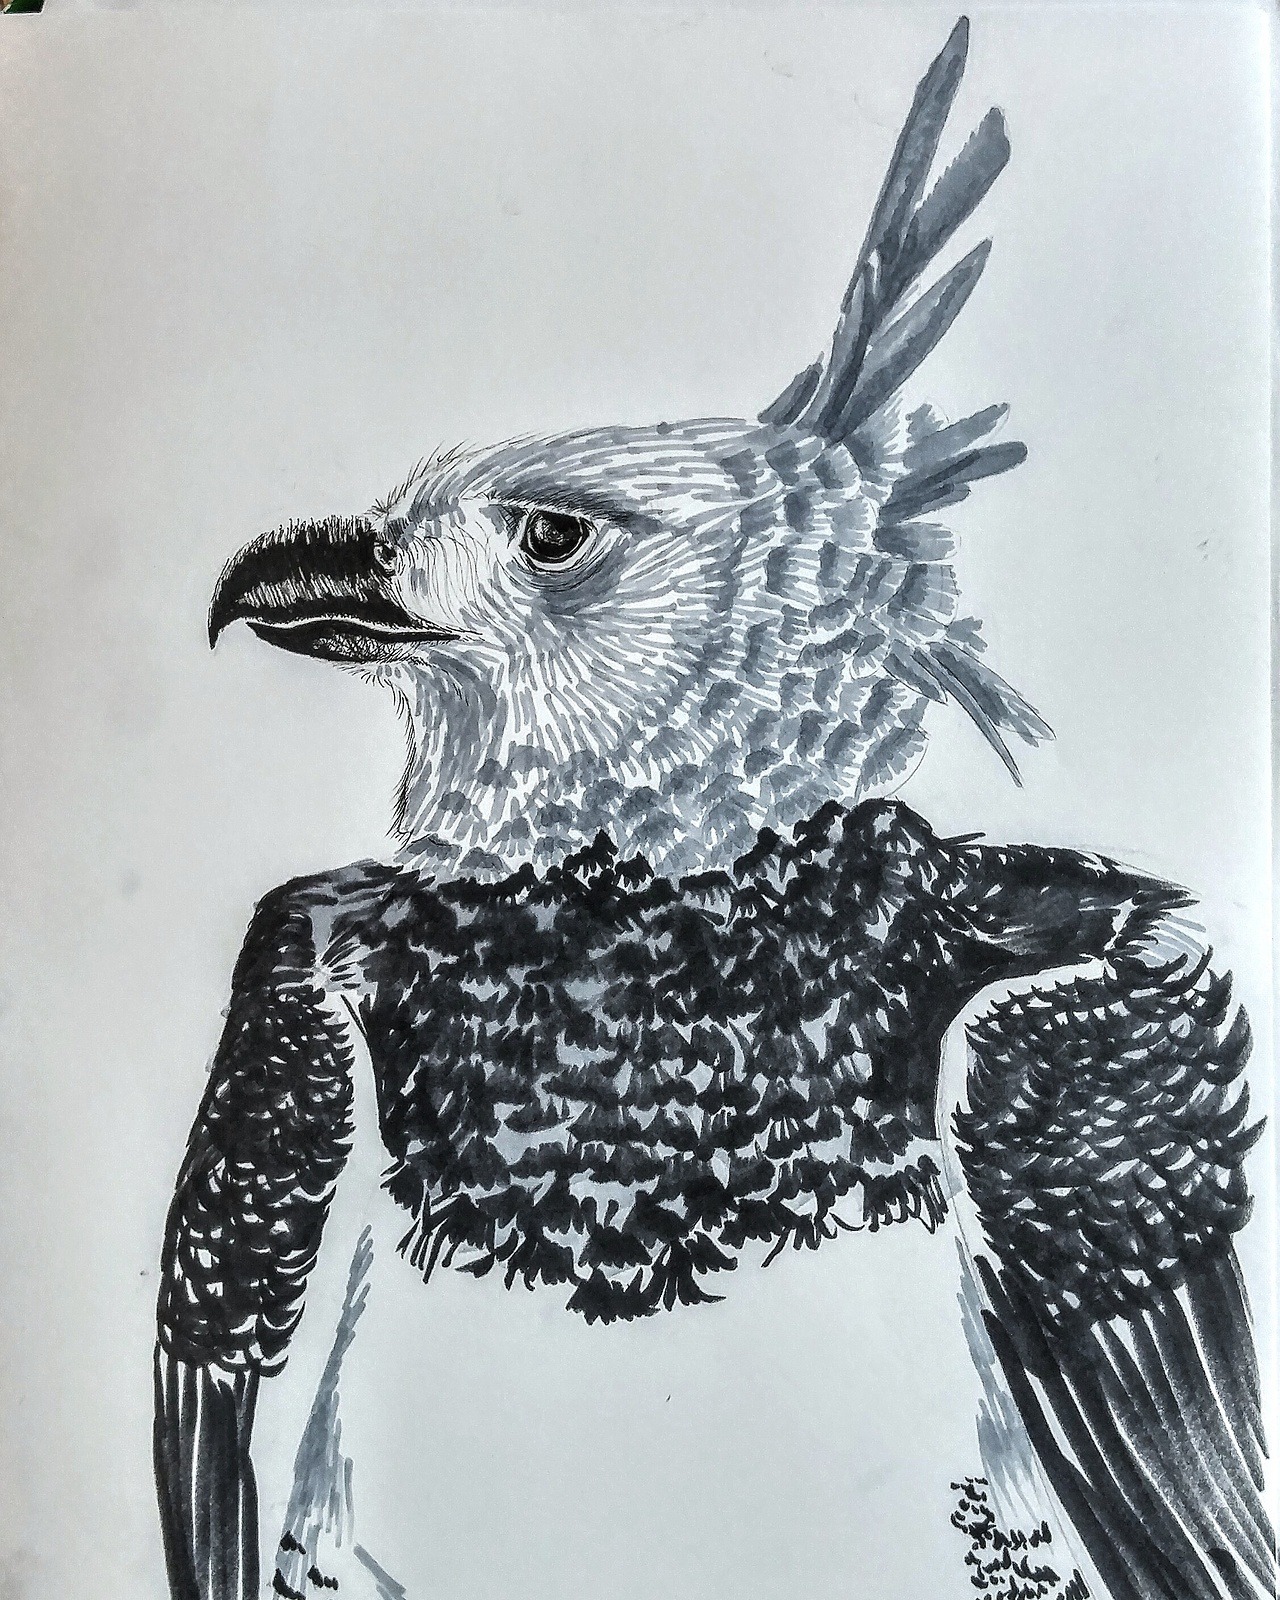 shannon's doodlin' blog — Inktober 13: Harpy Eagle The harpy eagle